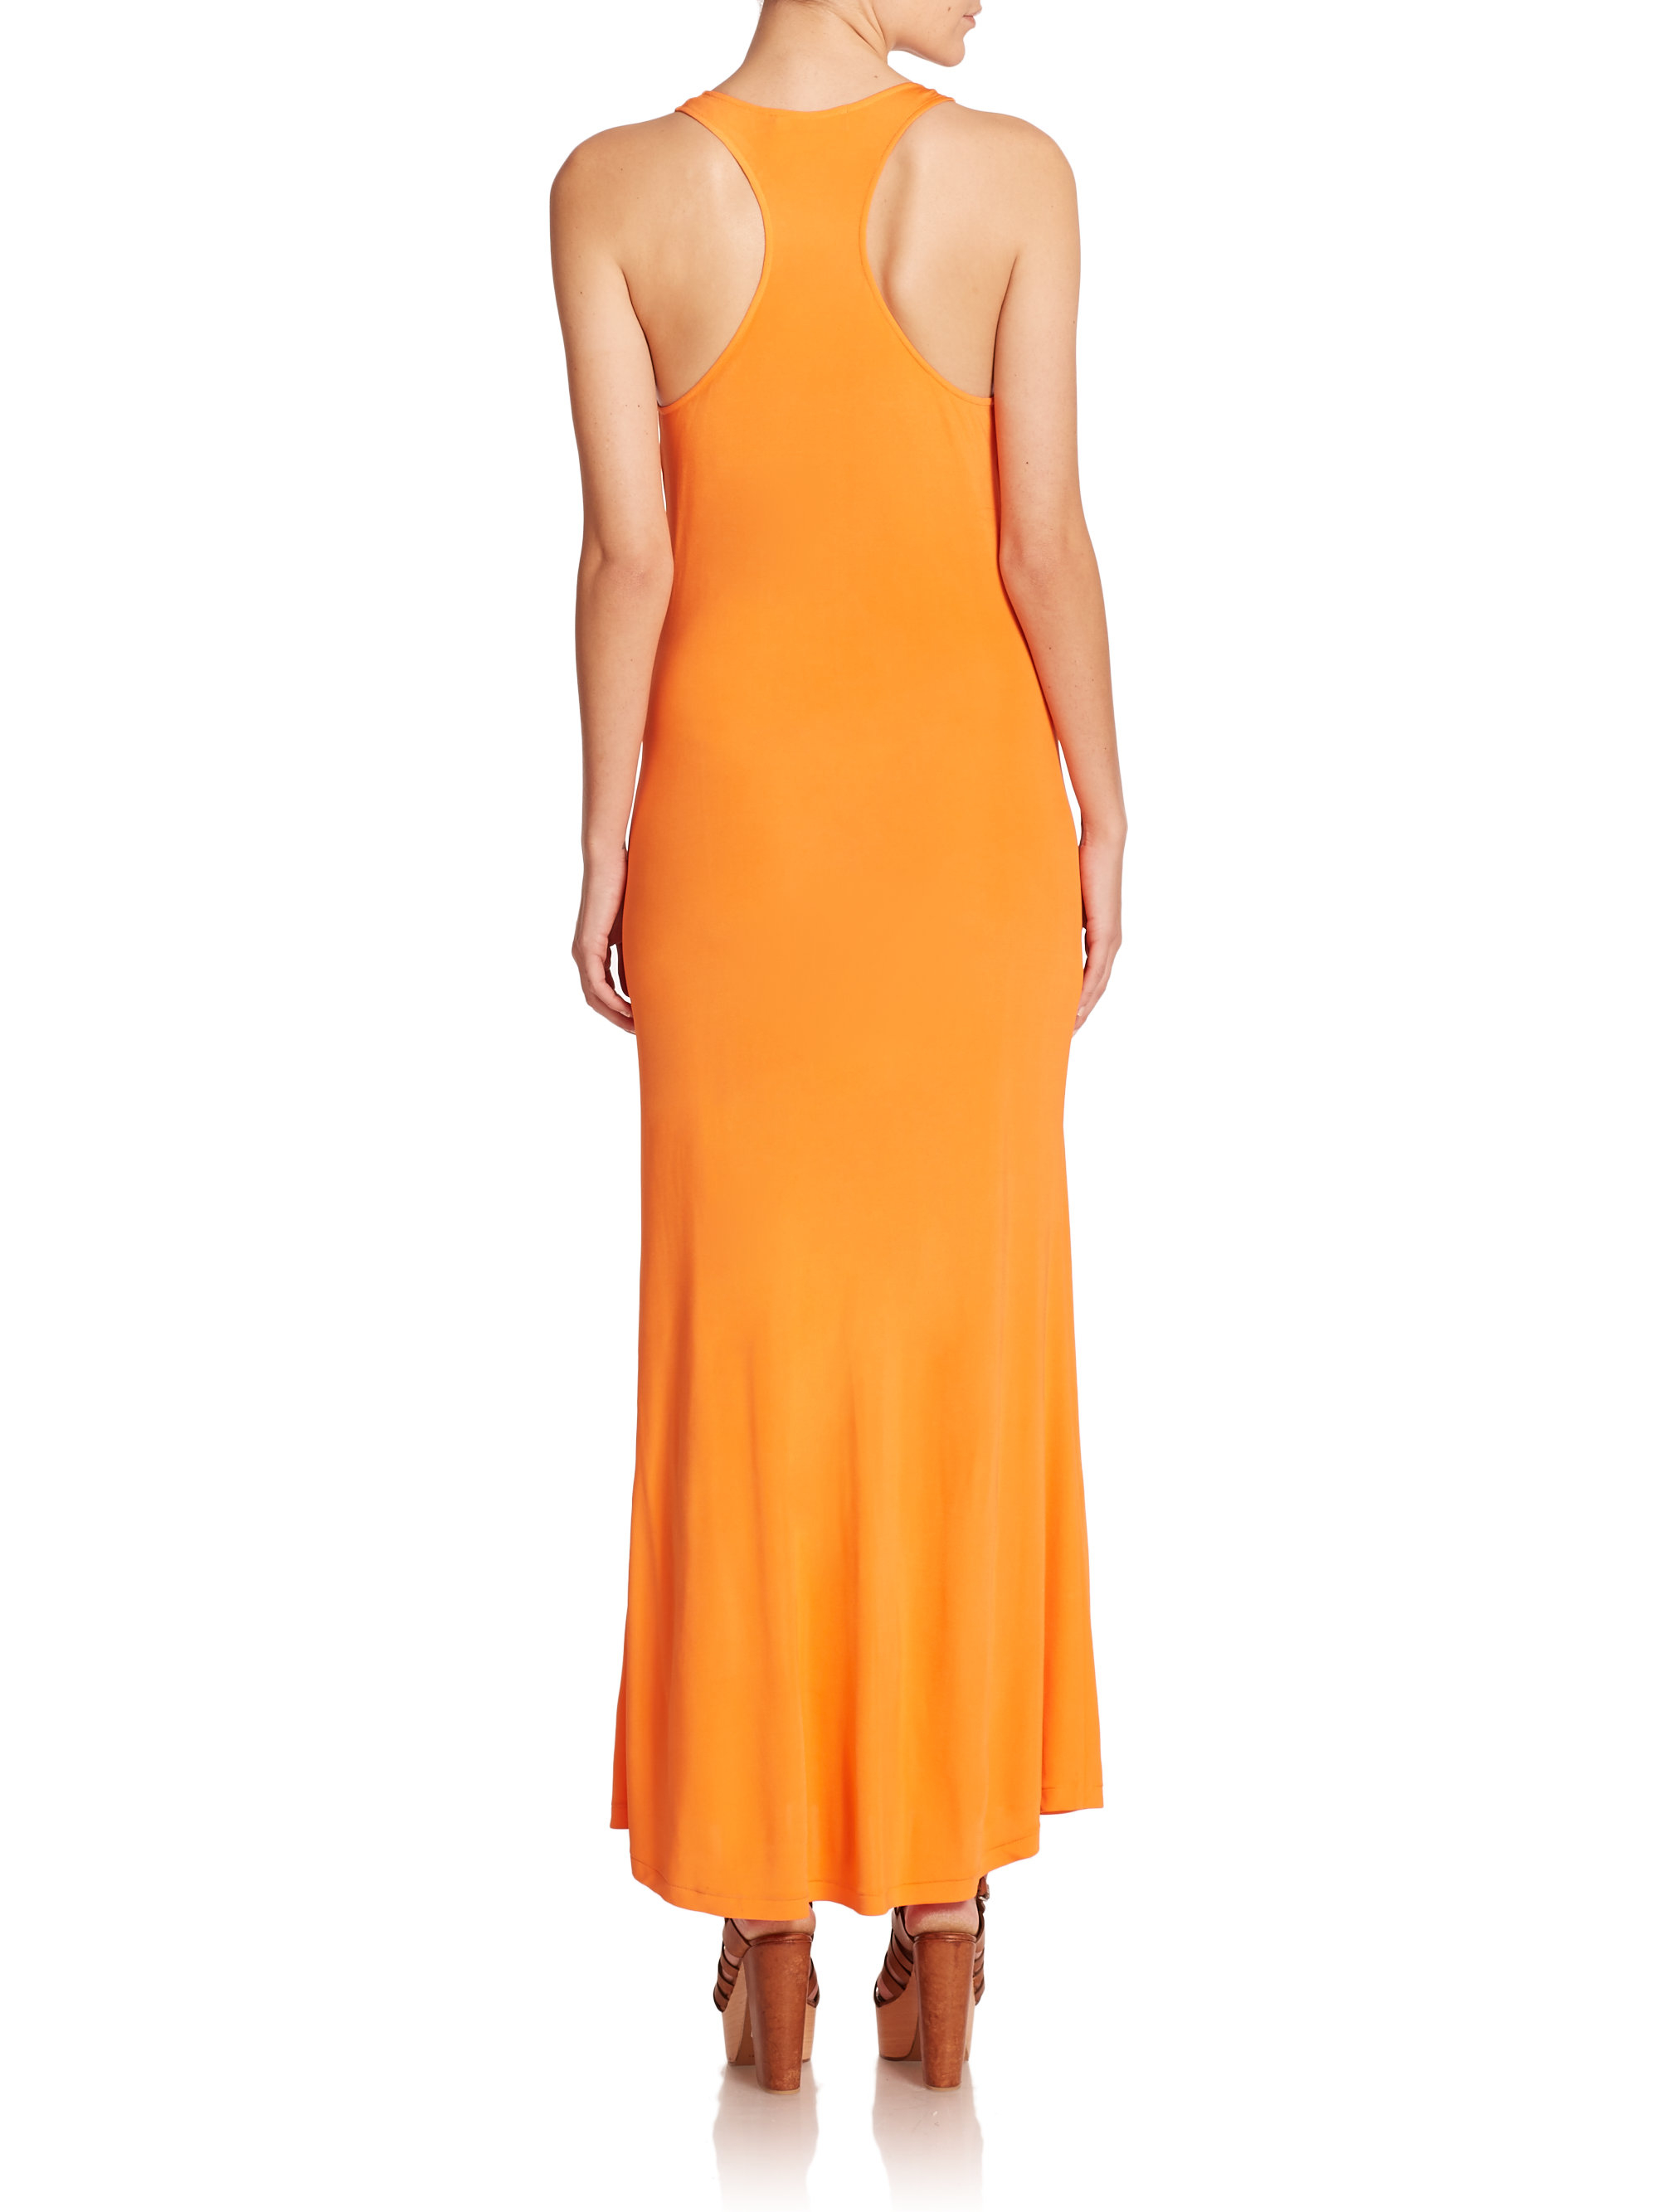 Lyst - Polo ralph lauren Knit Maxi Tank Dress in Orange